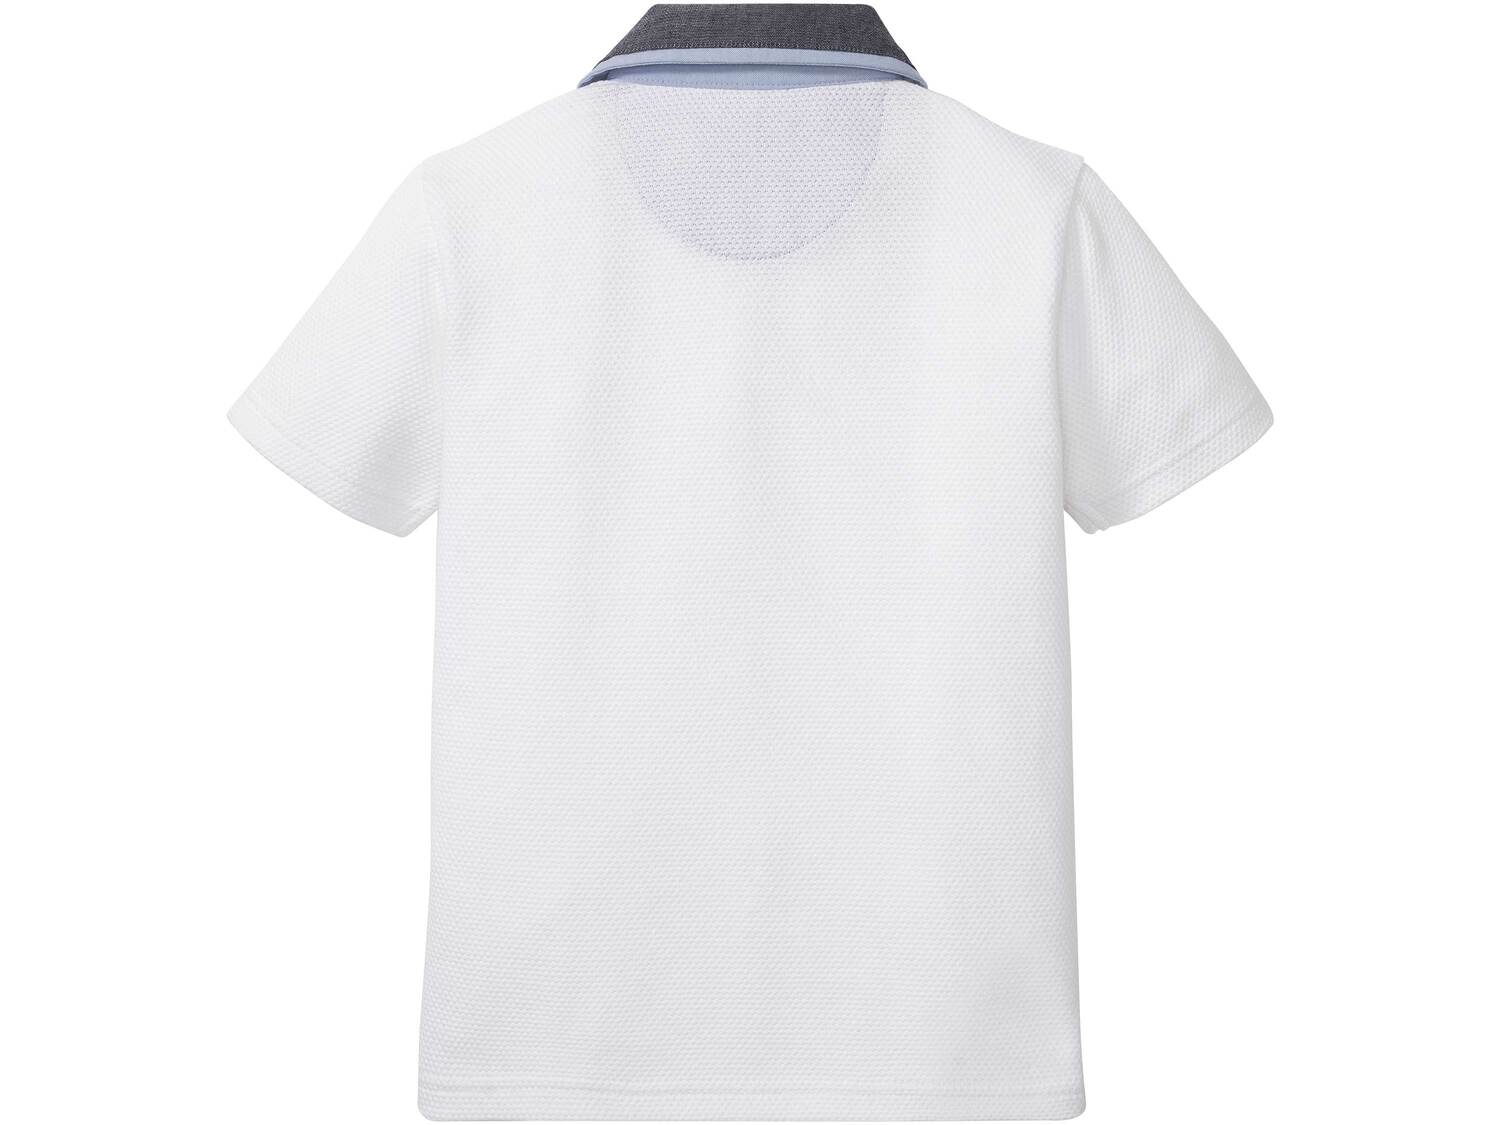 Koszulka chłopięca polo Pepperts, cena 19,99 PLN 
- rozmiary: 122-164
- 100% bawełny
- ...